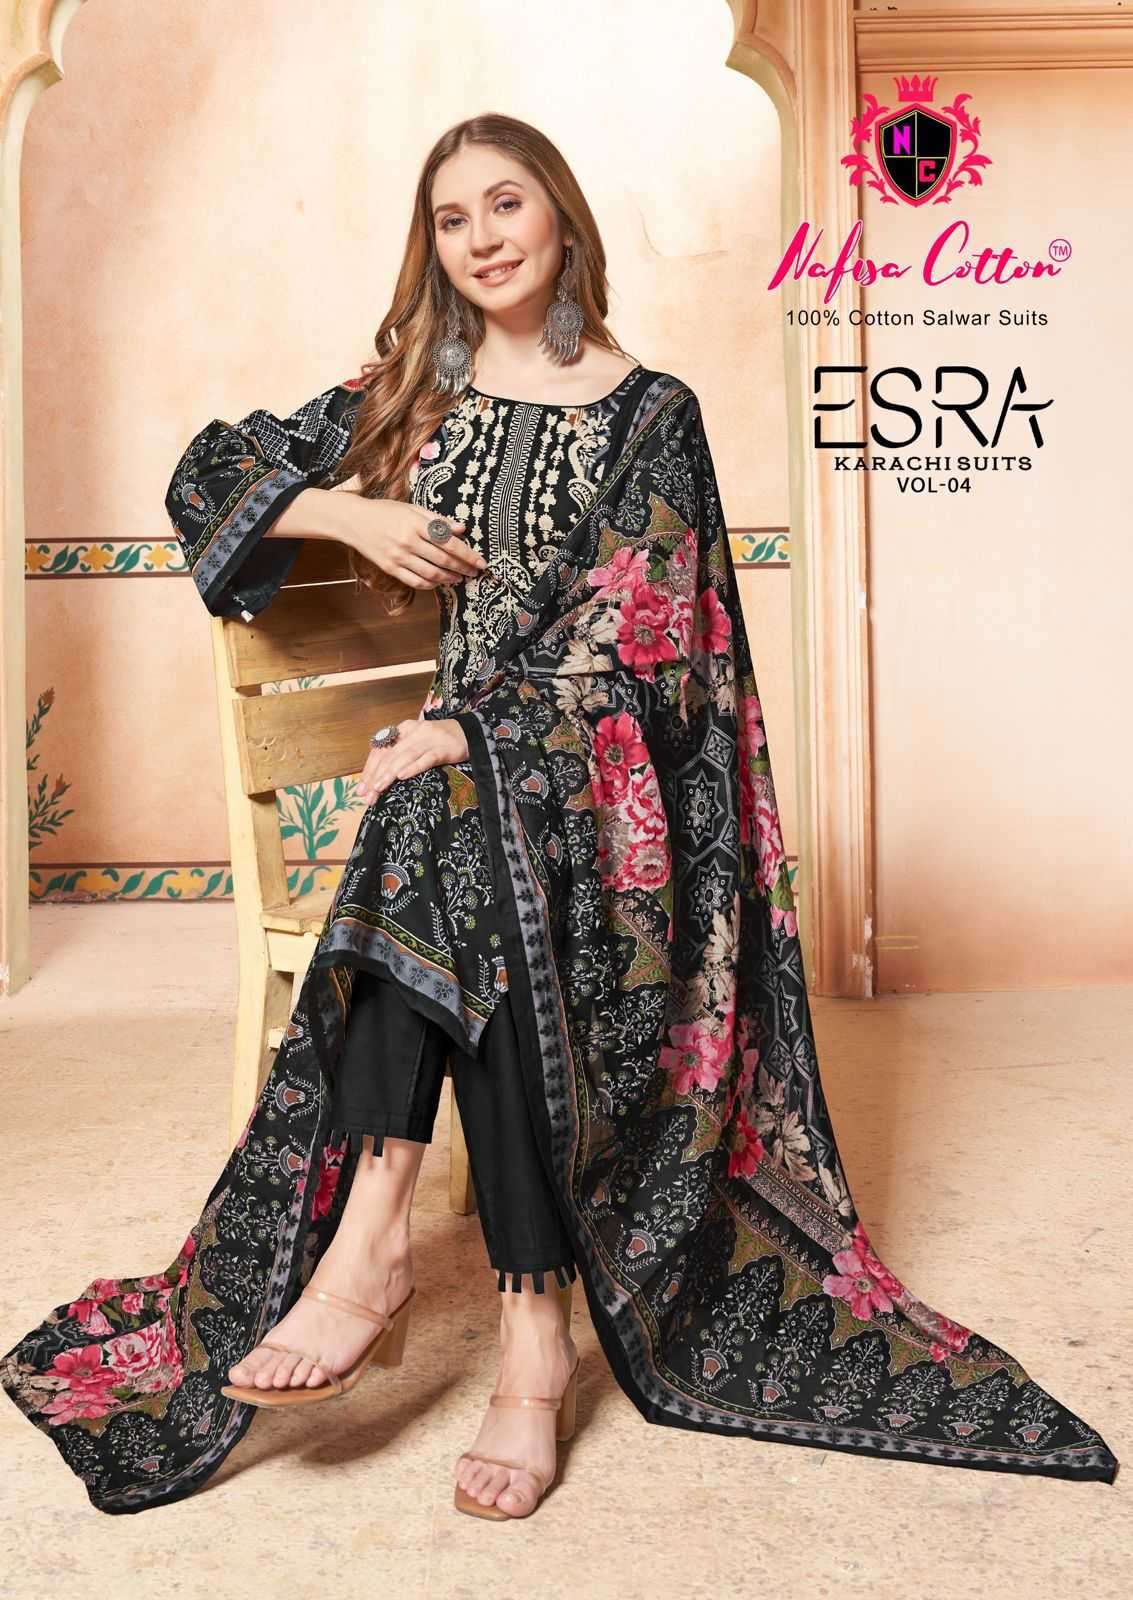 nafisa cotton esra karachi suits vol 4 series 4001-4006 Pure Soft Cotton suit